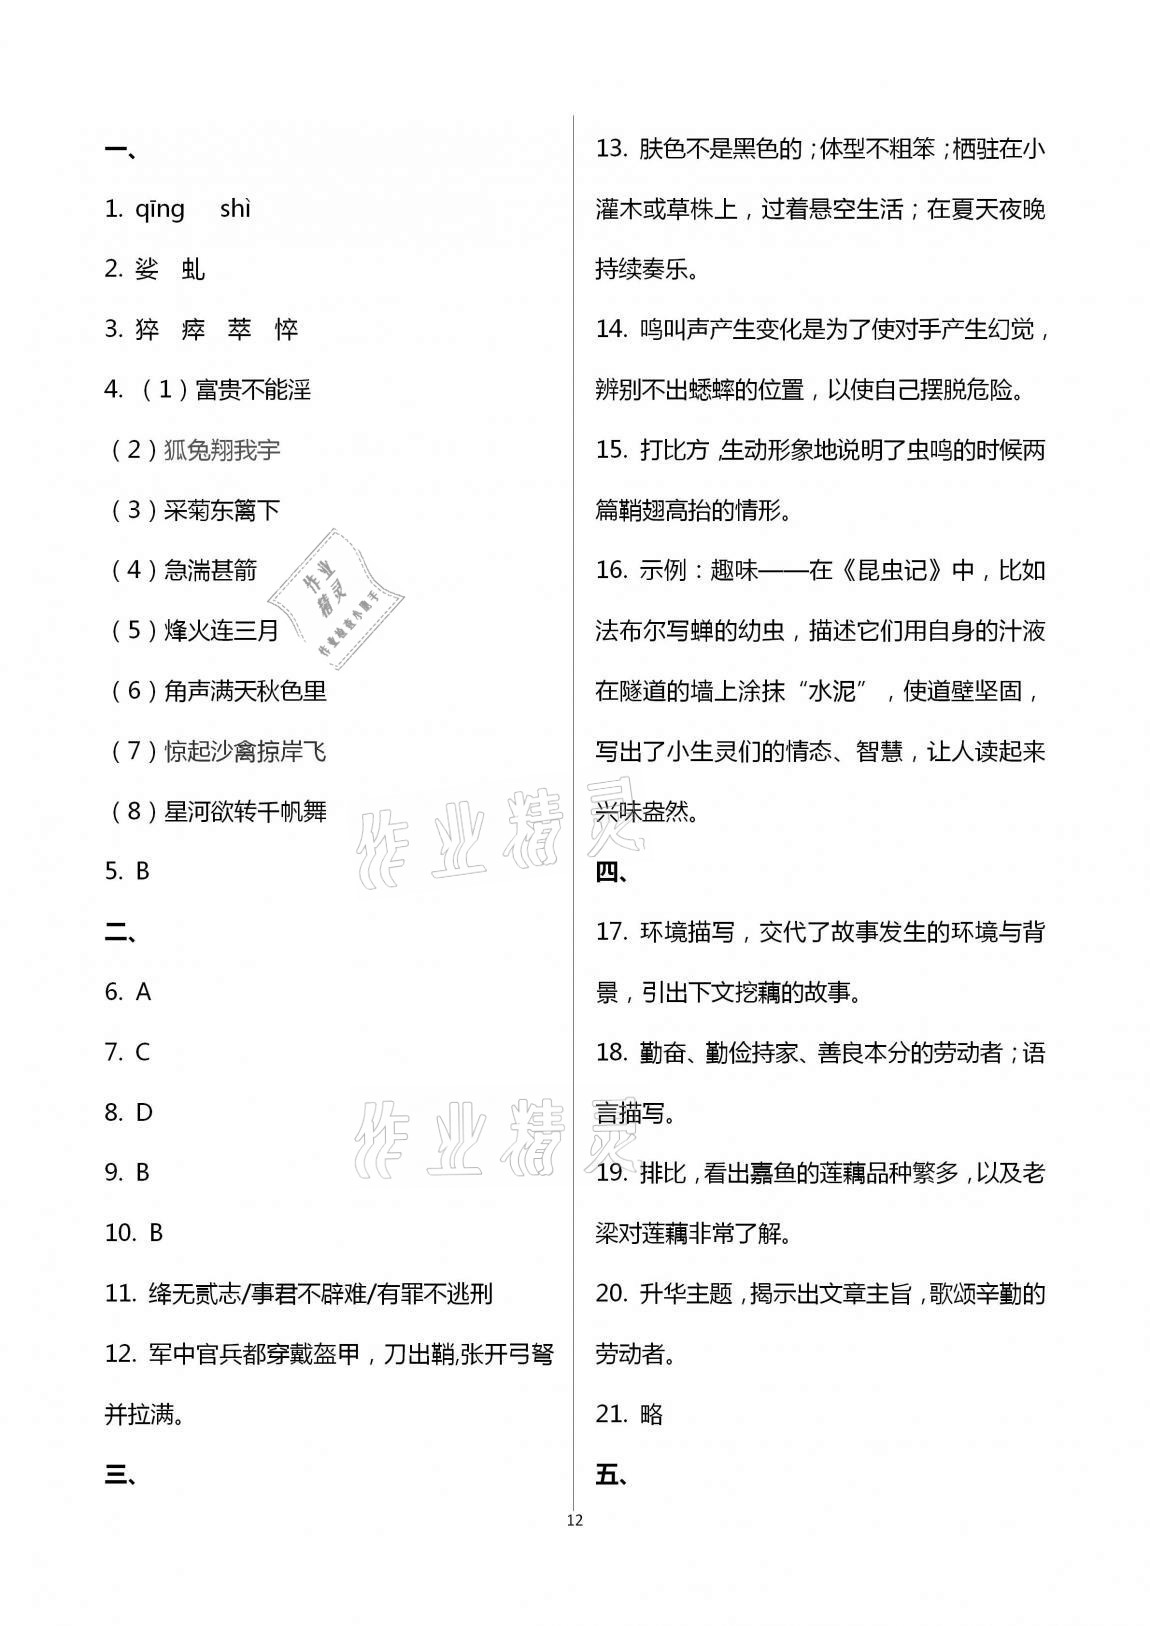 2020年学业水平评价八年级上册长江出版社 第12页